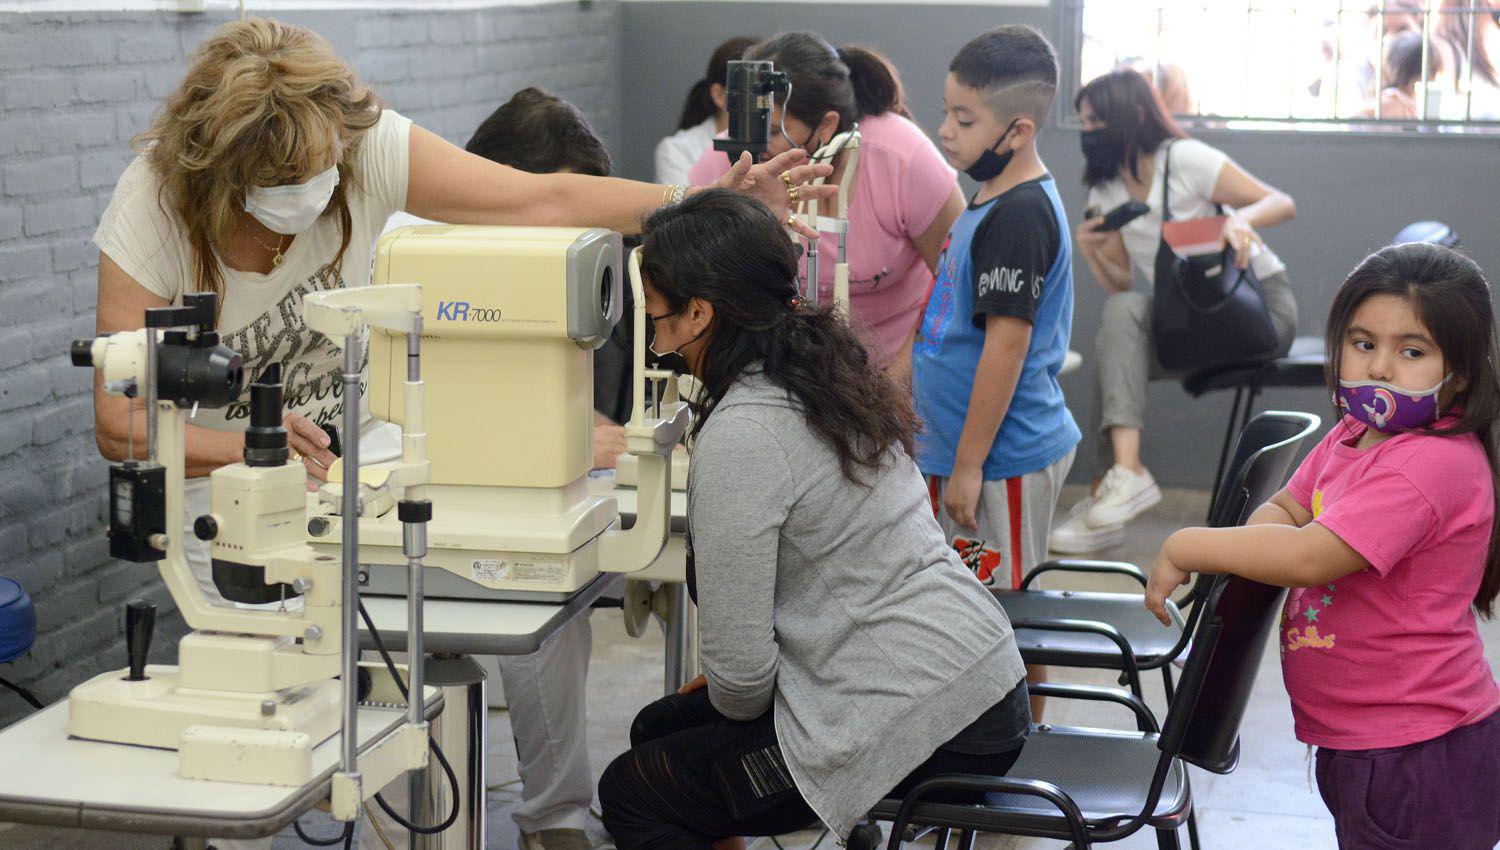 En el Centro Vecinal Daniel Herrero se realizaron exaacutemenes oftalmoloacutegicos